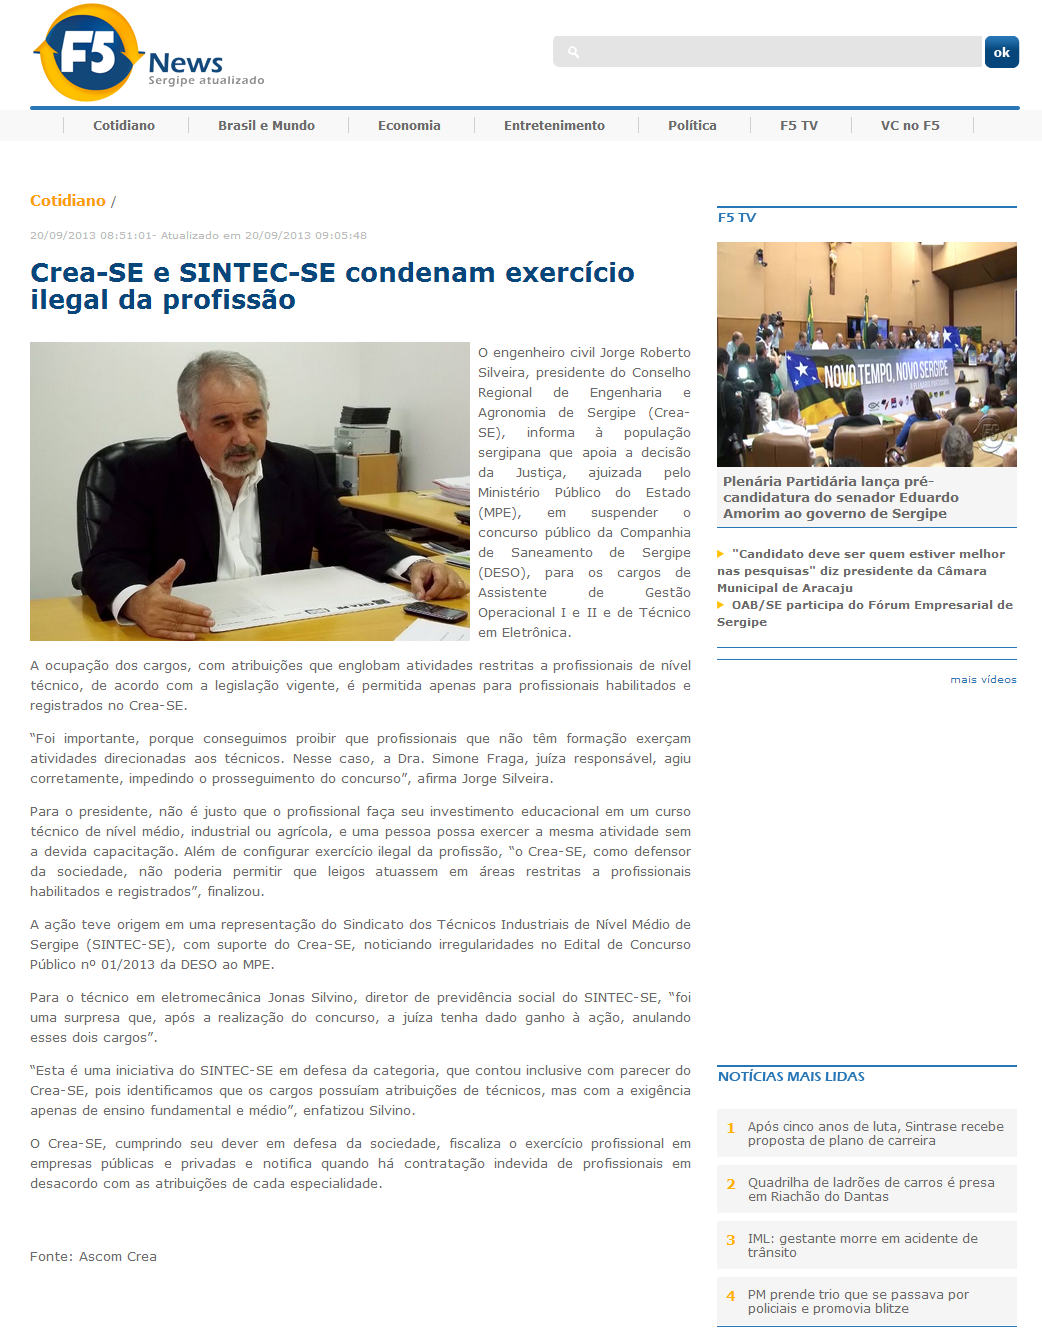 Crea-SE e SINTEC-SE condenam exercício ilegal da profissão